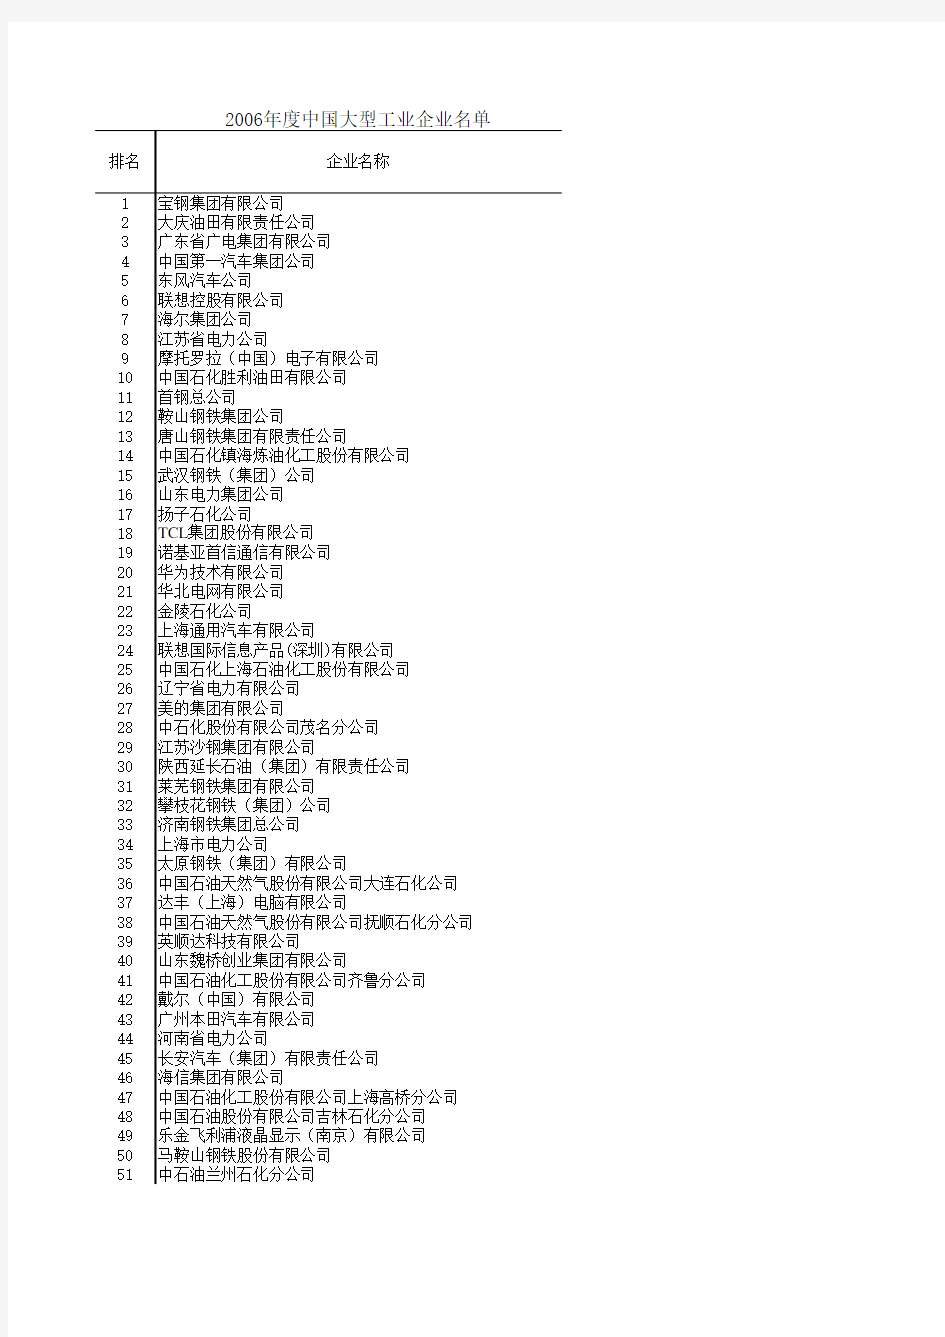 中国大型工业企业名单